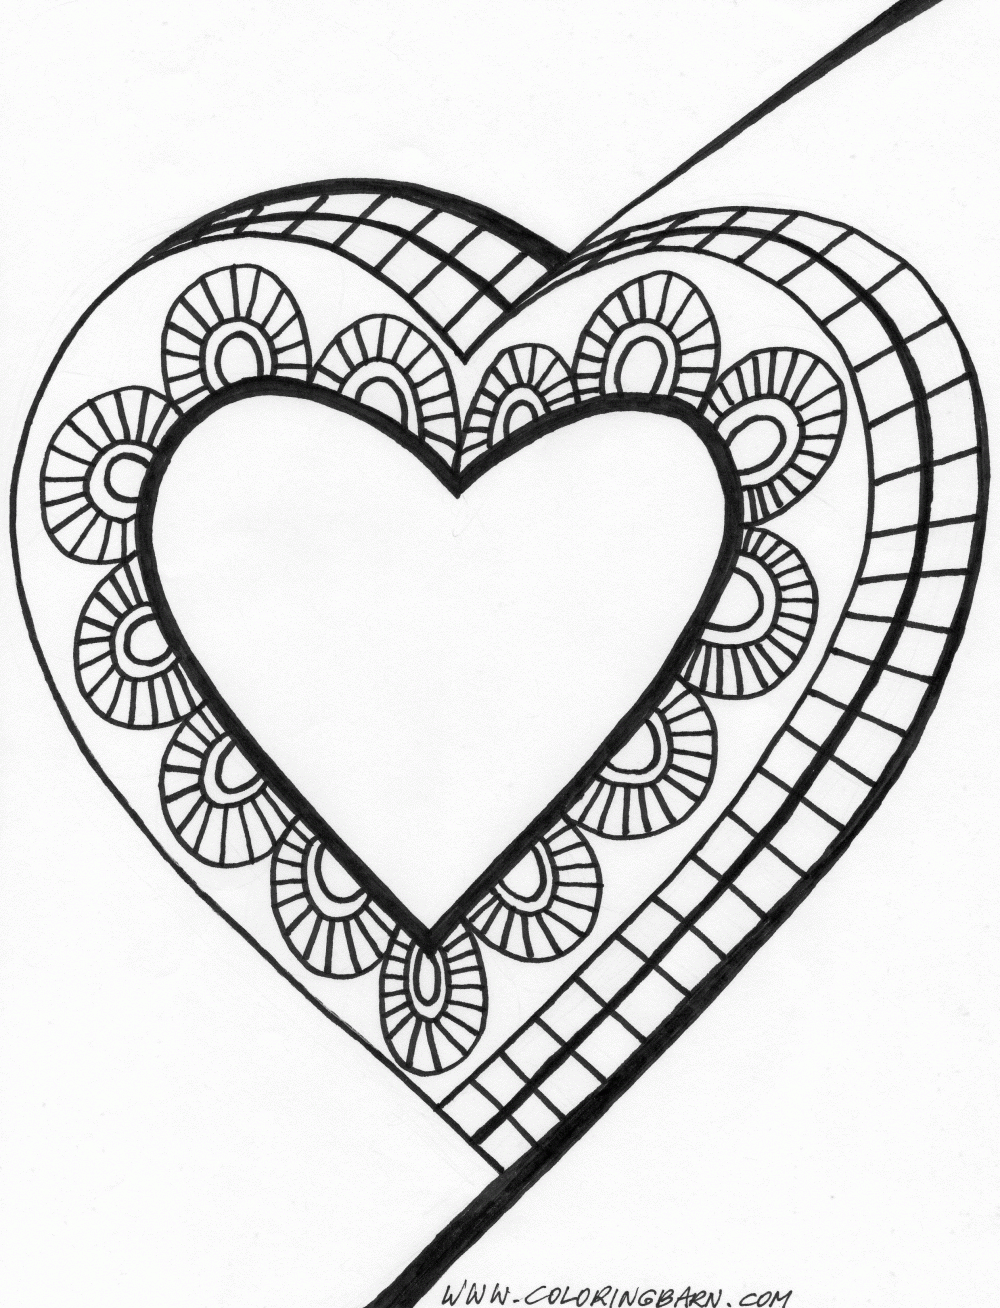 111 Dessins De Coloriage Coeur À Imprimer Sur Laguerche - Page 1 avec Coeur Dessin A Imprimer